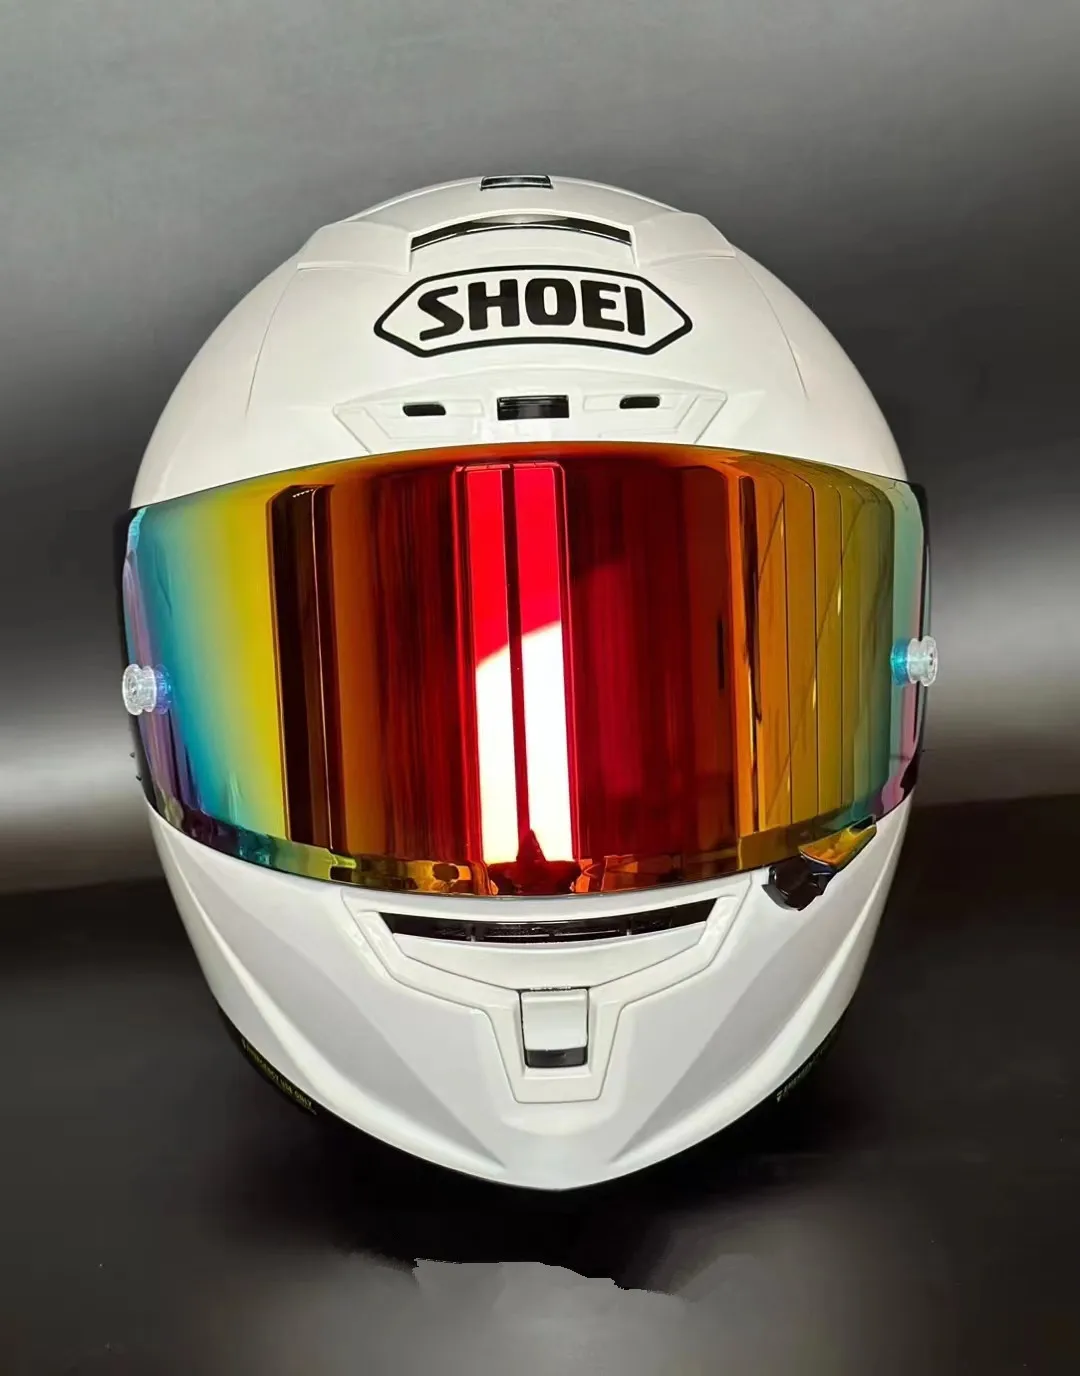 

Шлем мотоциклетный X14, жемчужный шлем R1, 60-е юбилейное издание, белый, на все лицо, для гонок